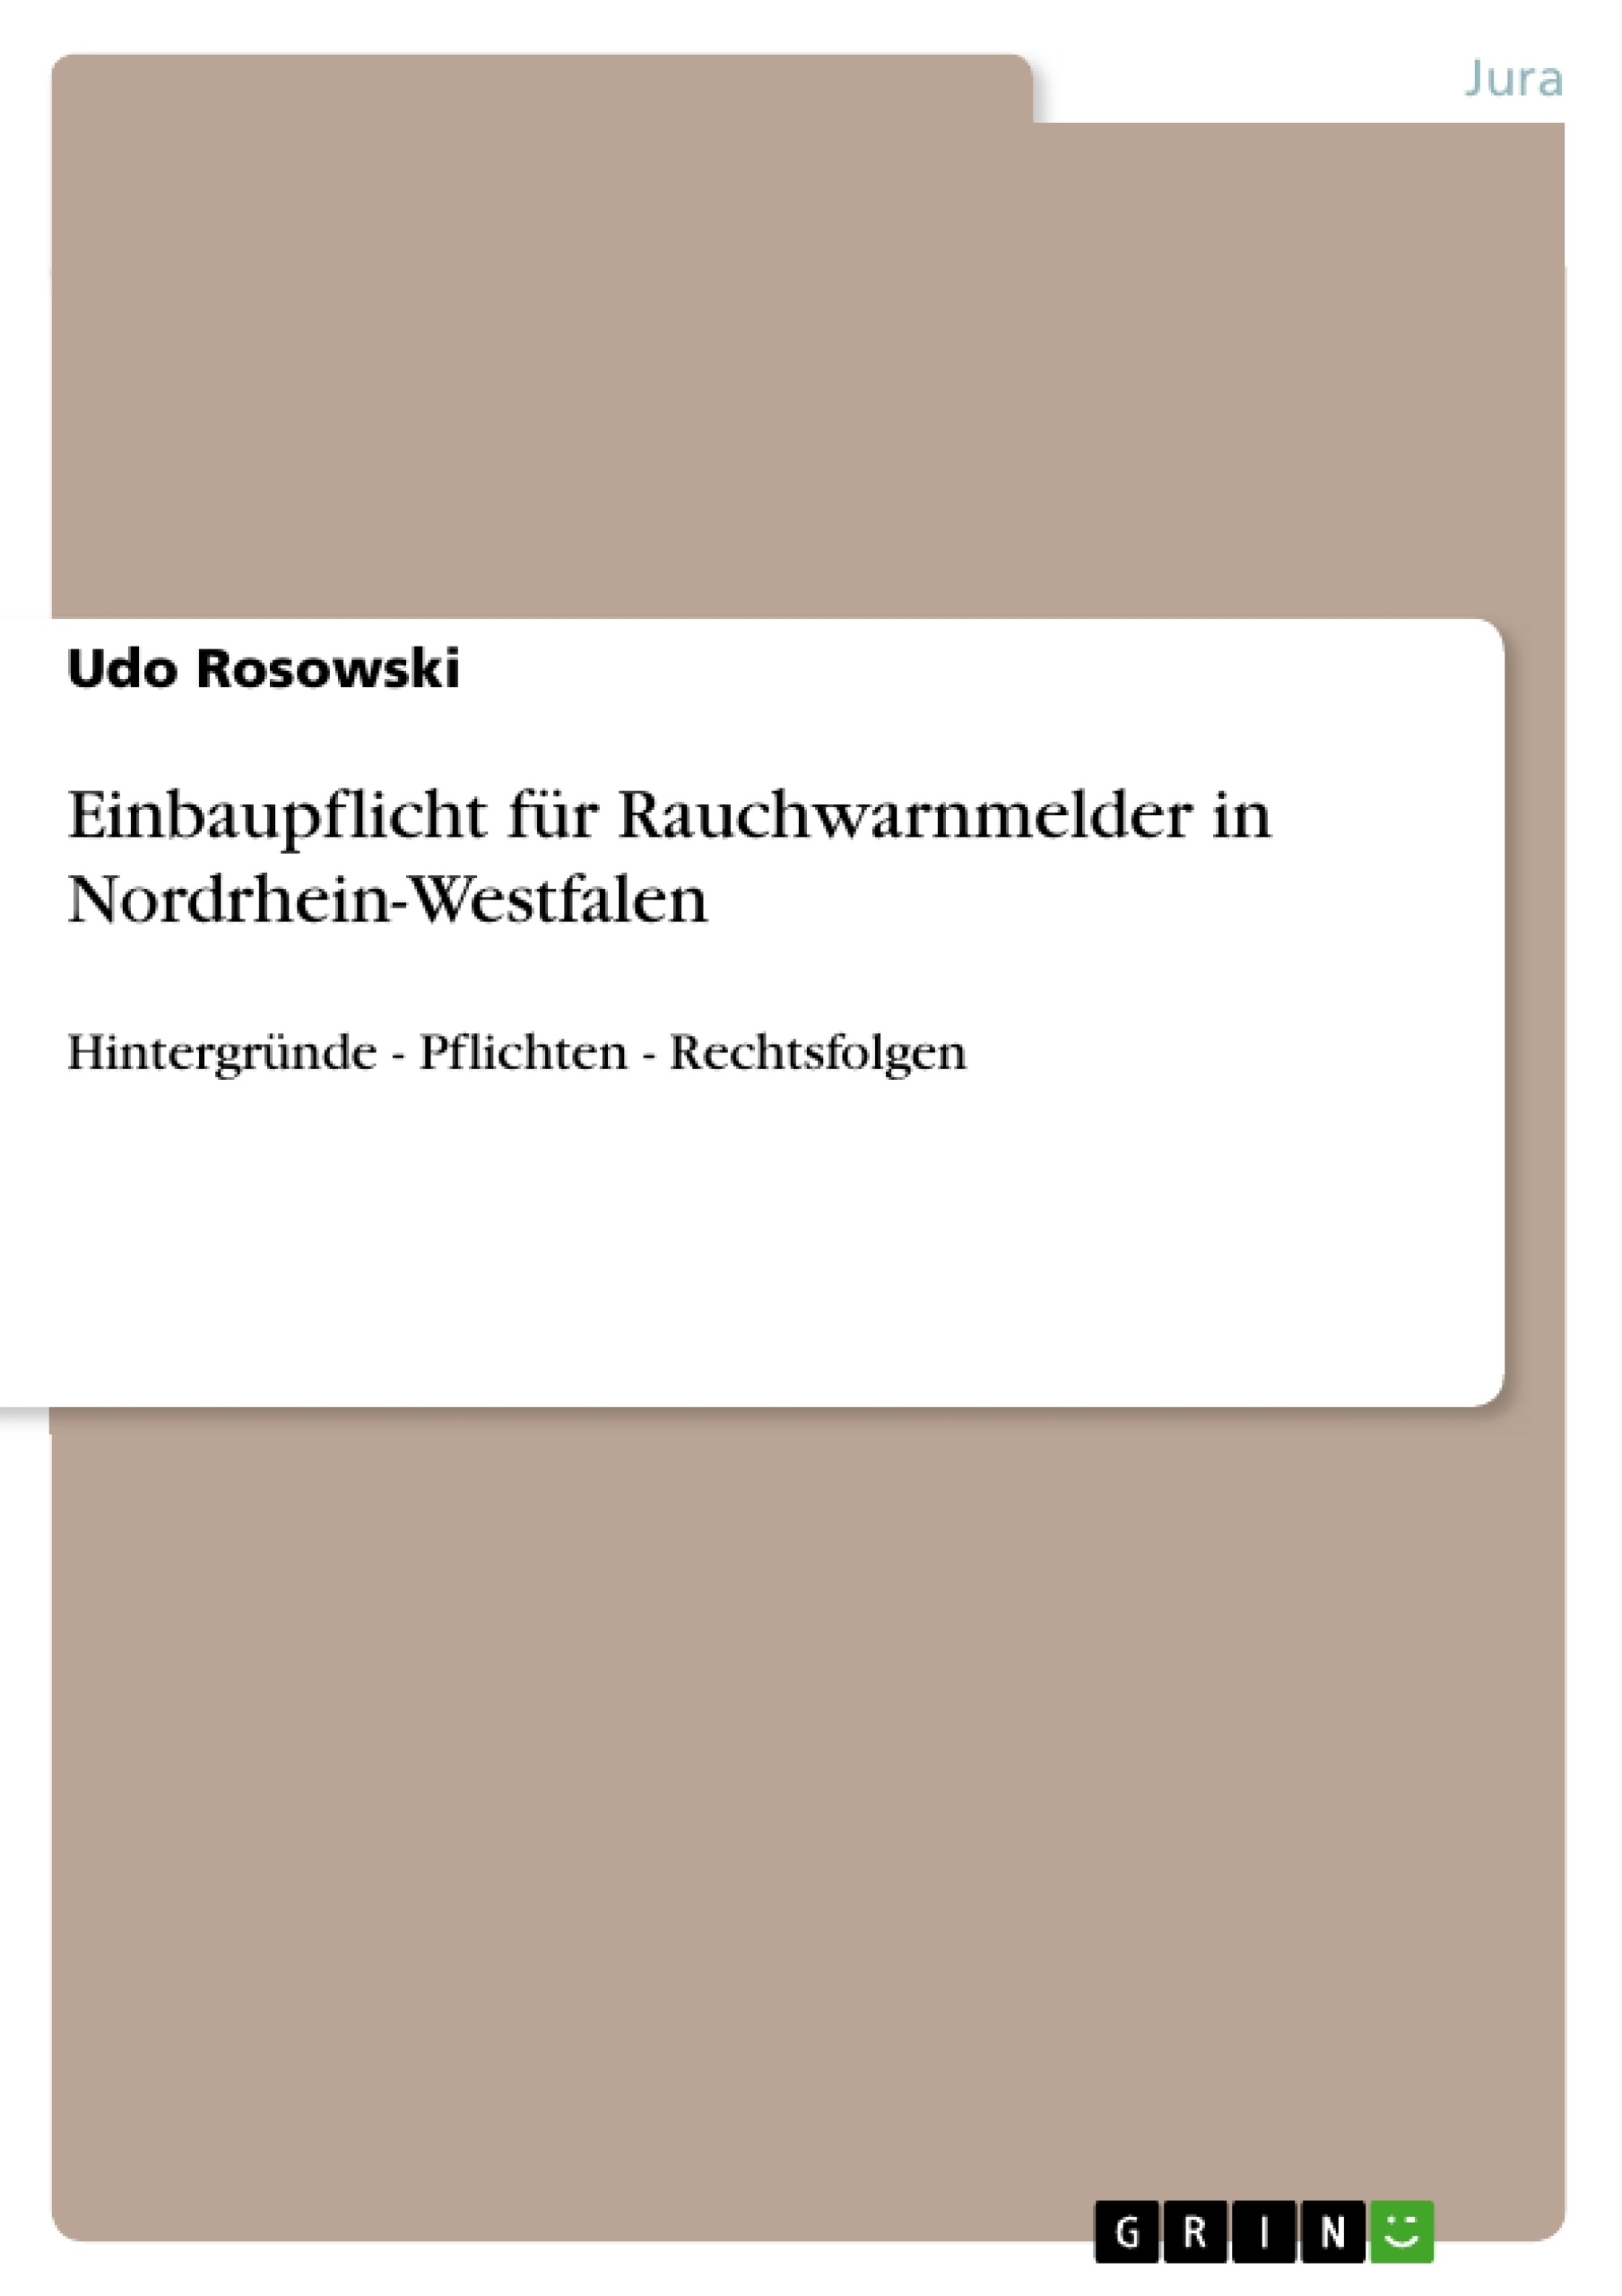 Título: Einbaupflicht für Rauchwarnmelder in Nordrhein-Westfalen